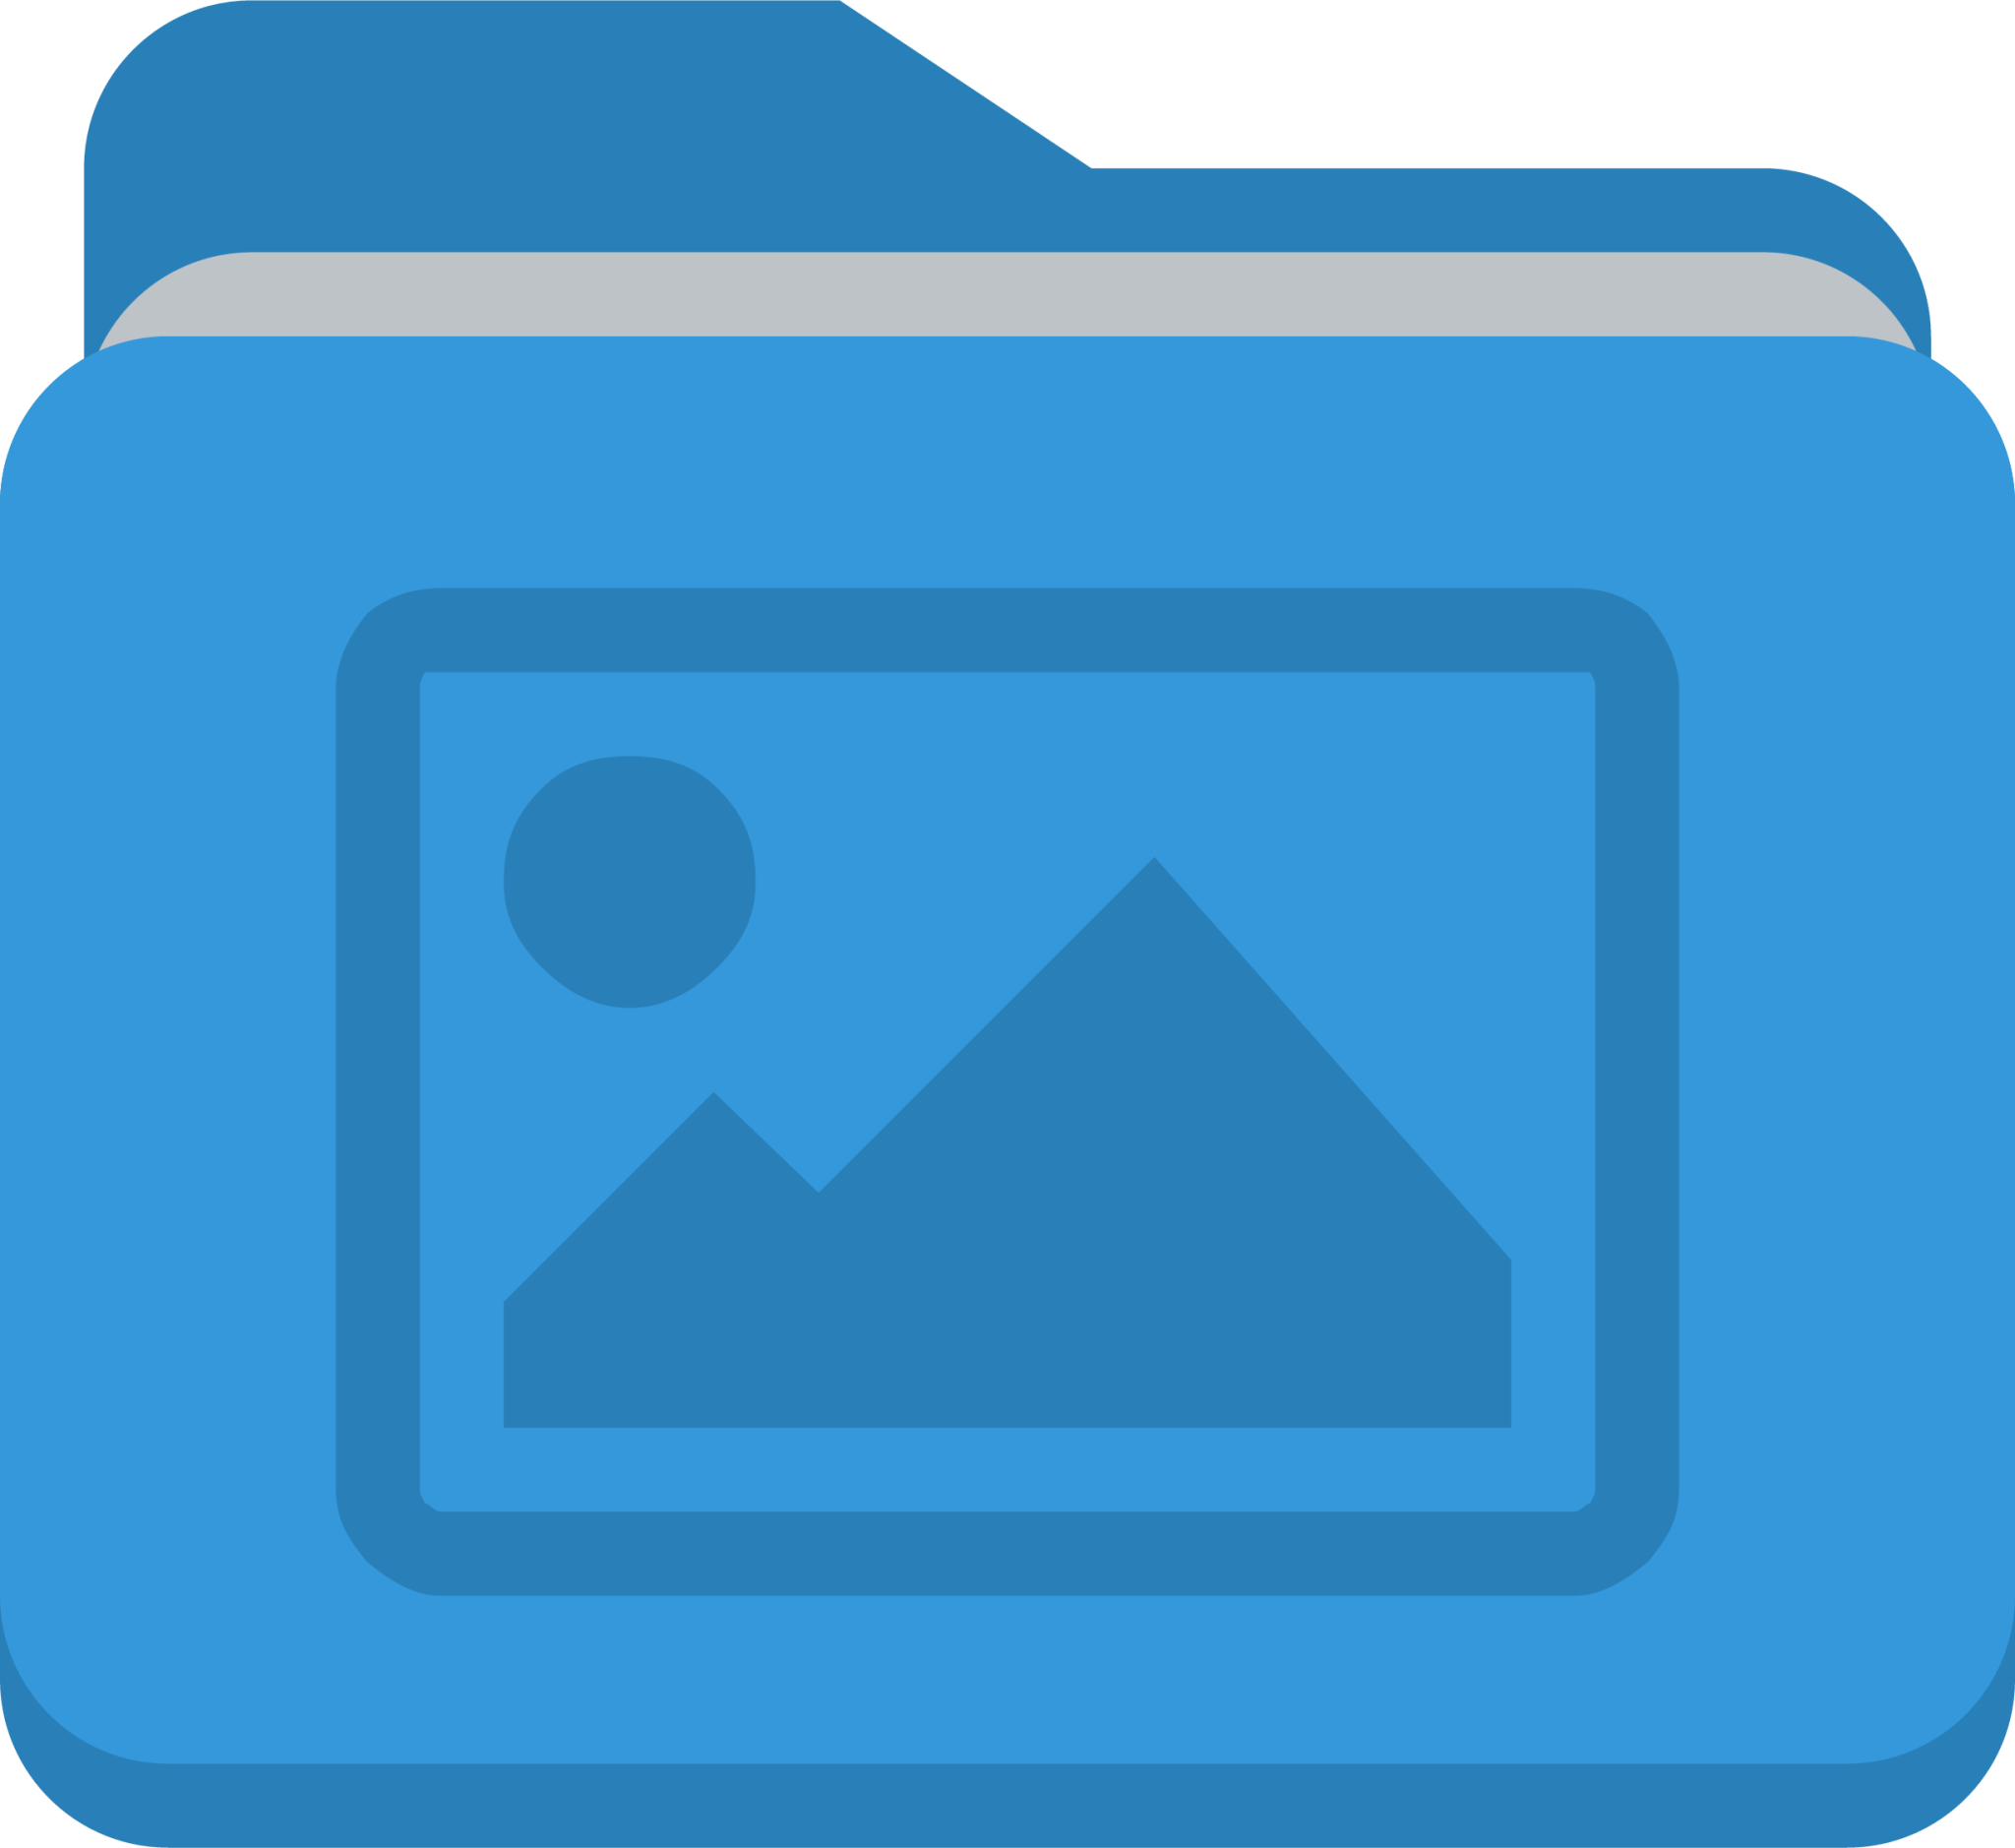 folder picture icon